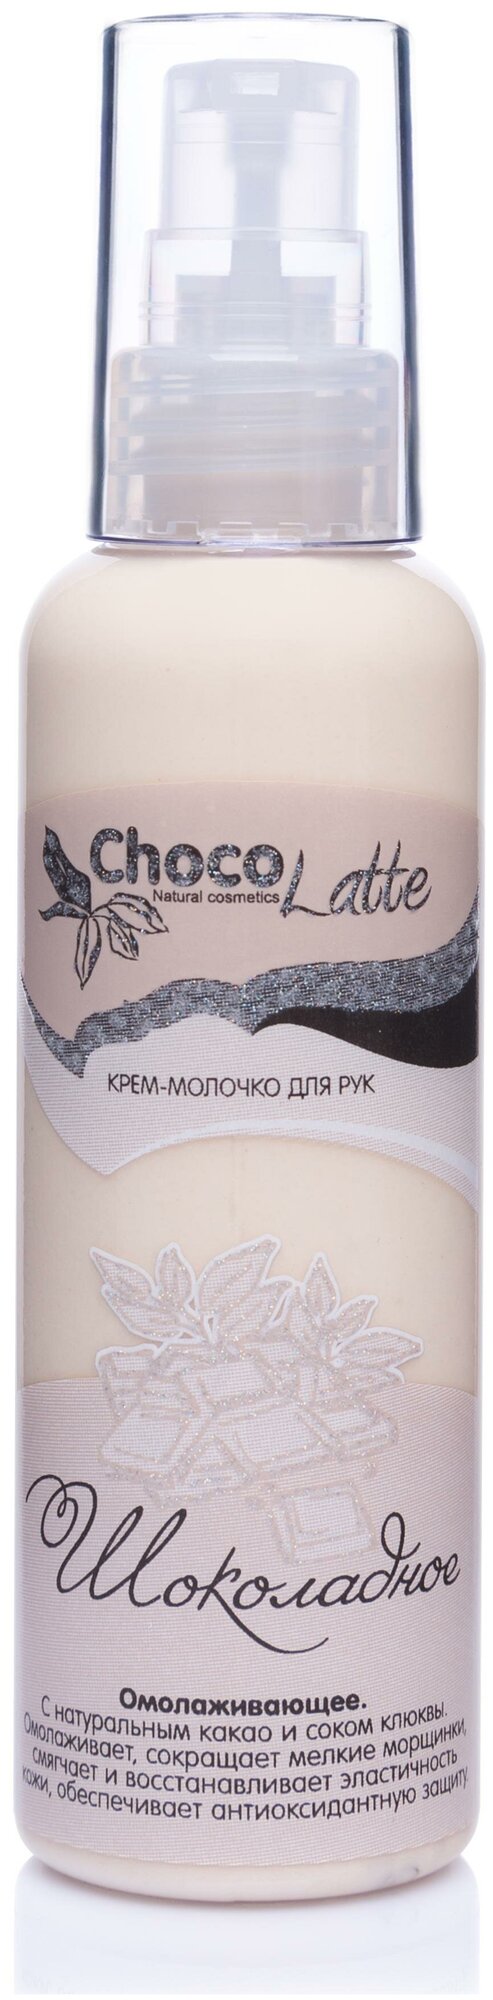 CHOCOLATTE Крем-молочко для рук шоколадное, 100 мл, CHOCOLATTE